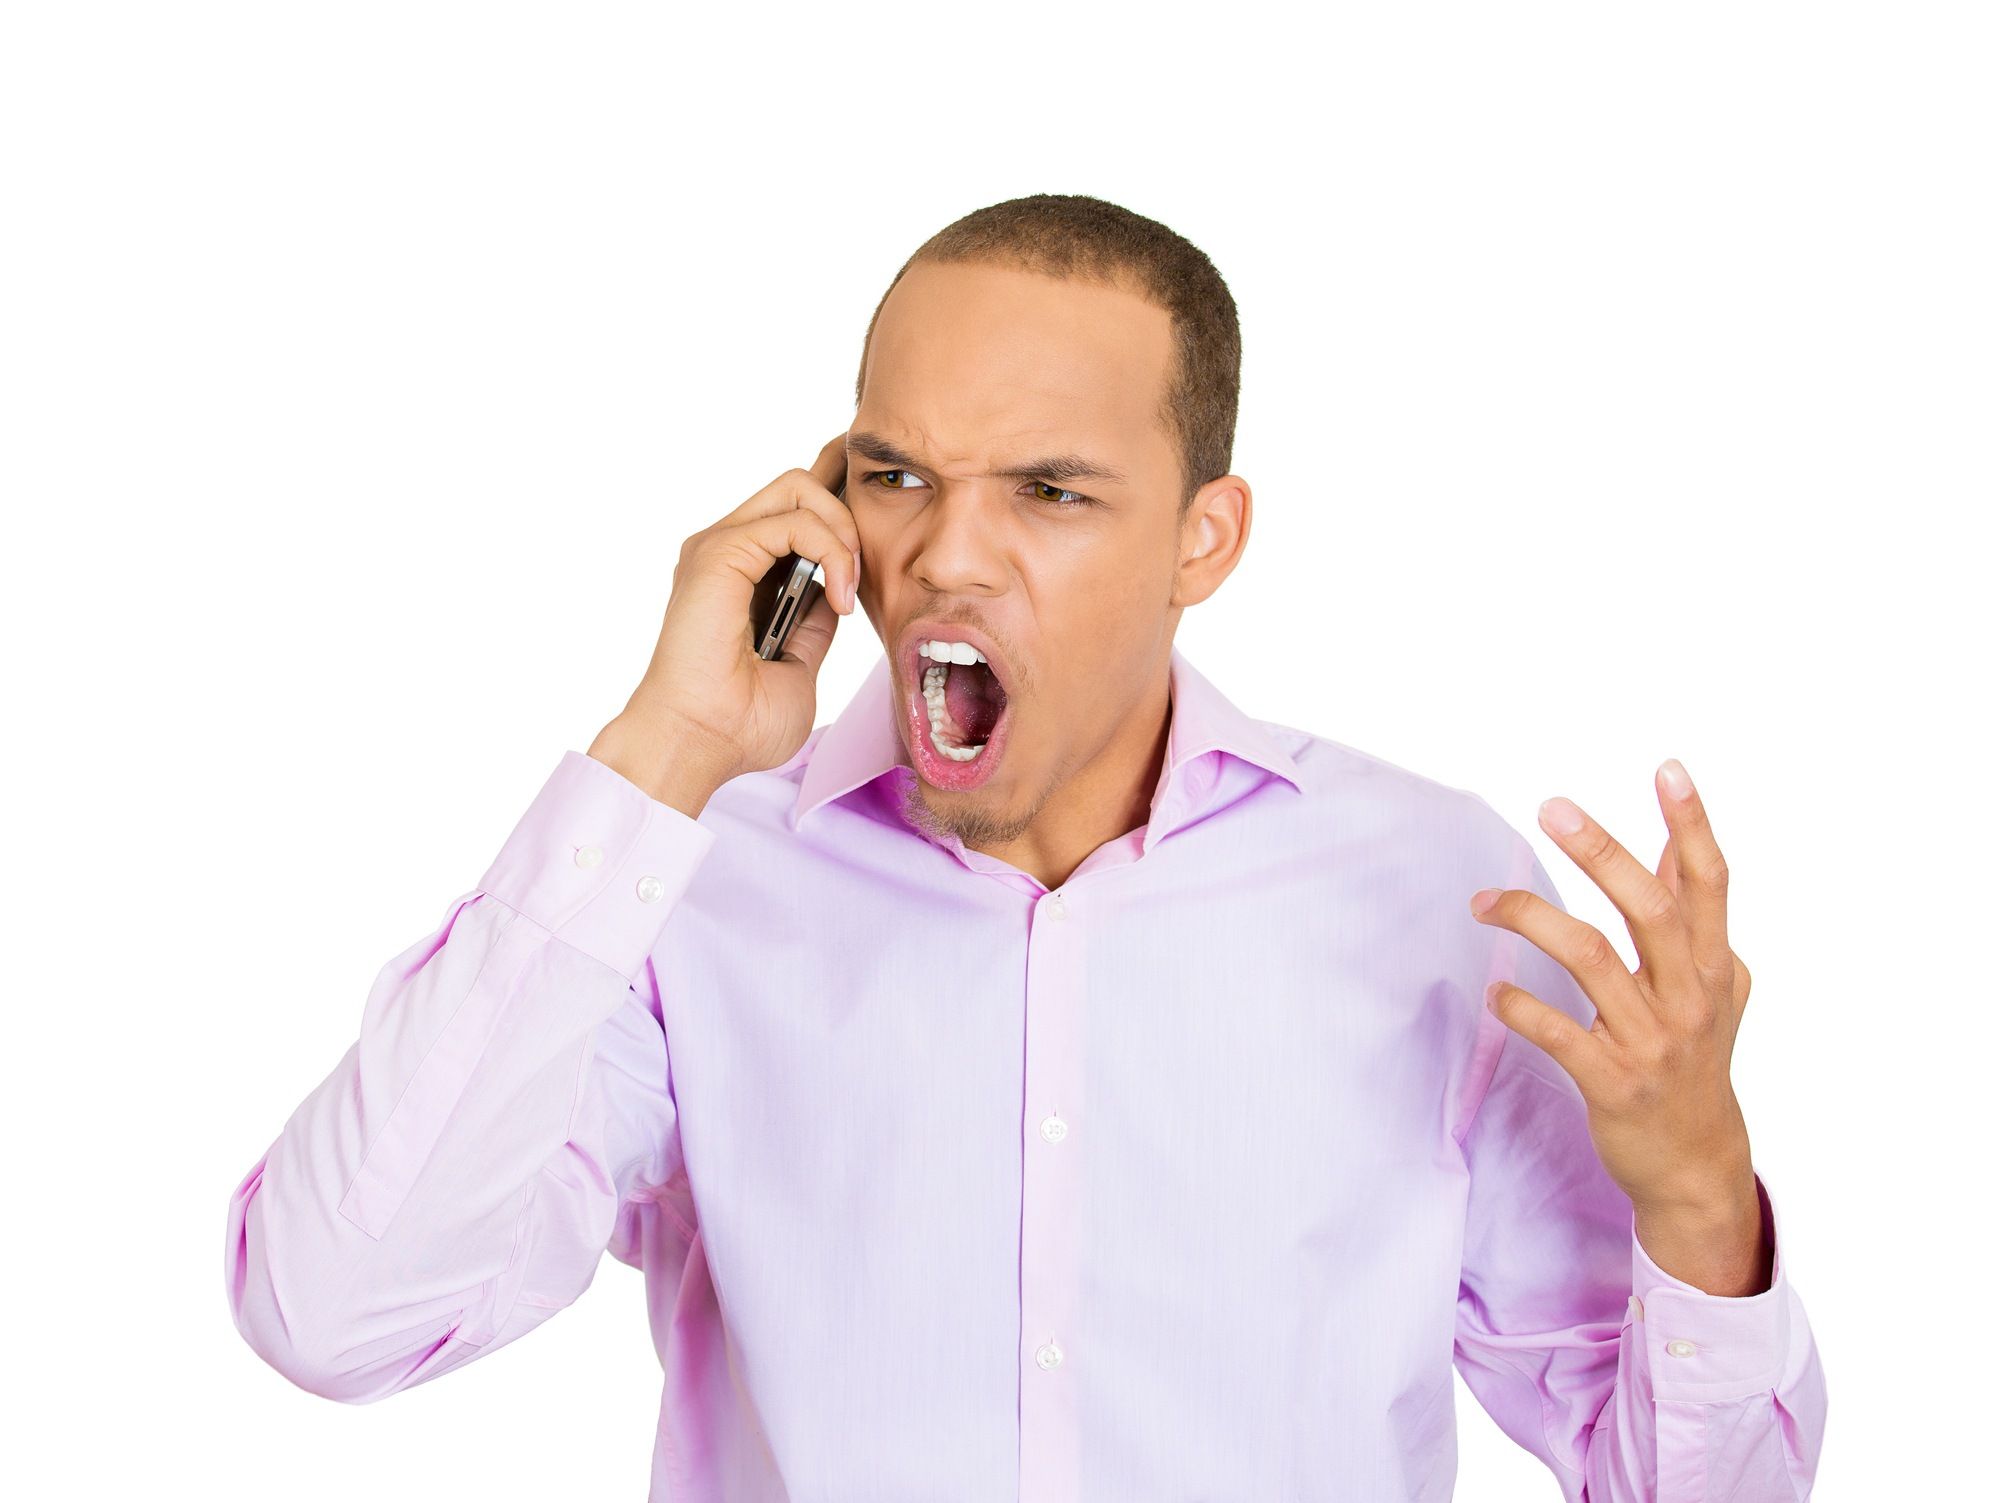 Angry man on phone call